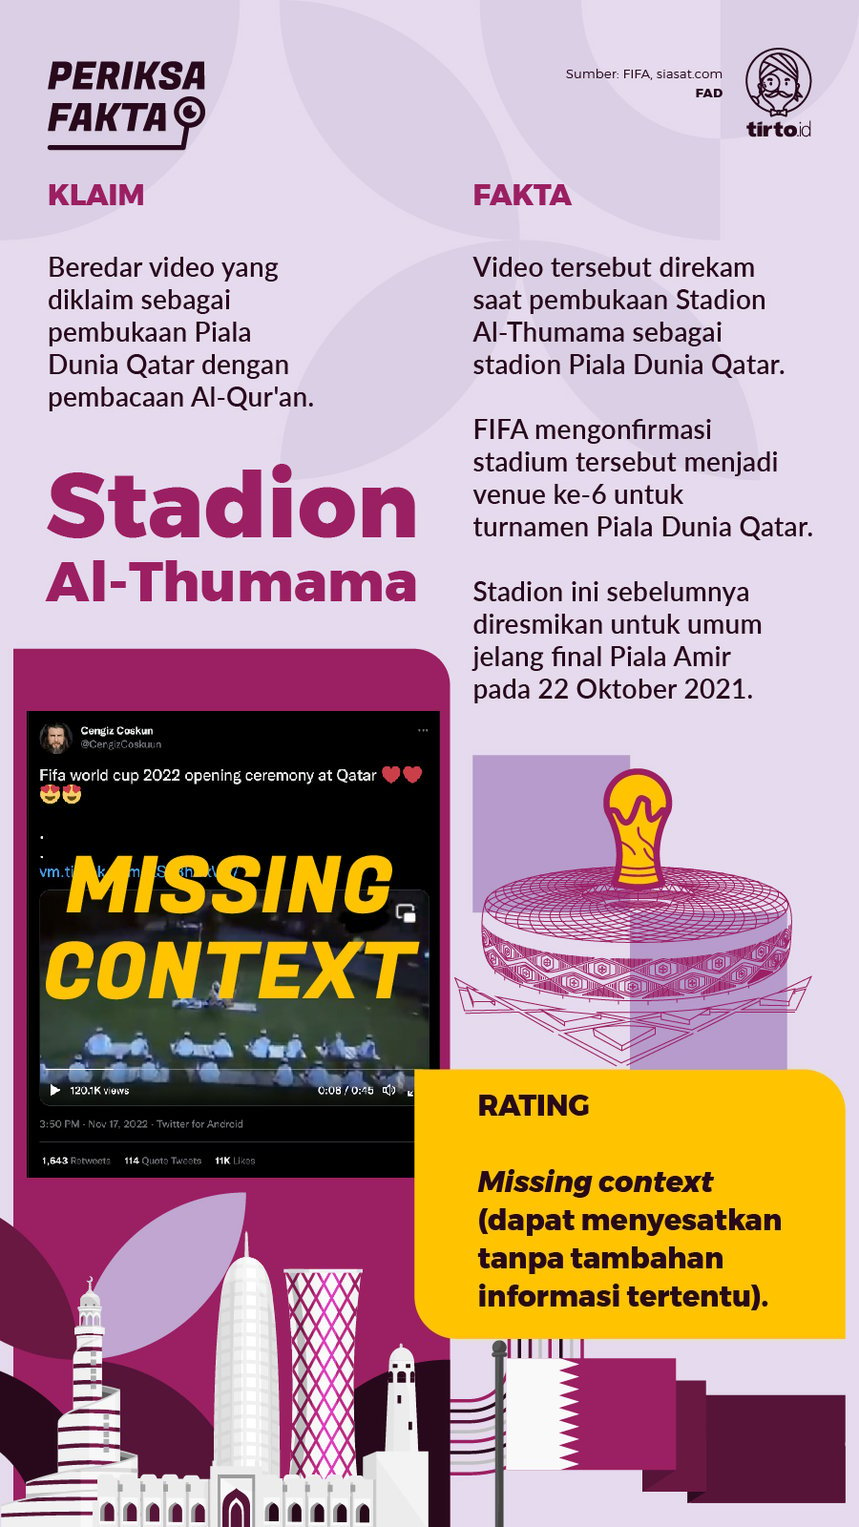 Infografik Periksa Fakta Stadion Al-Thumama